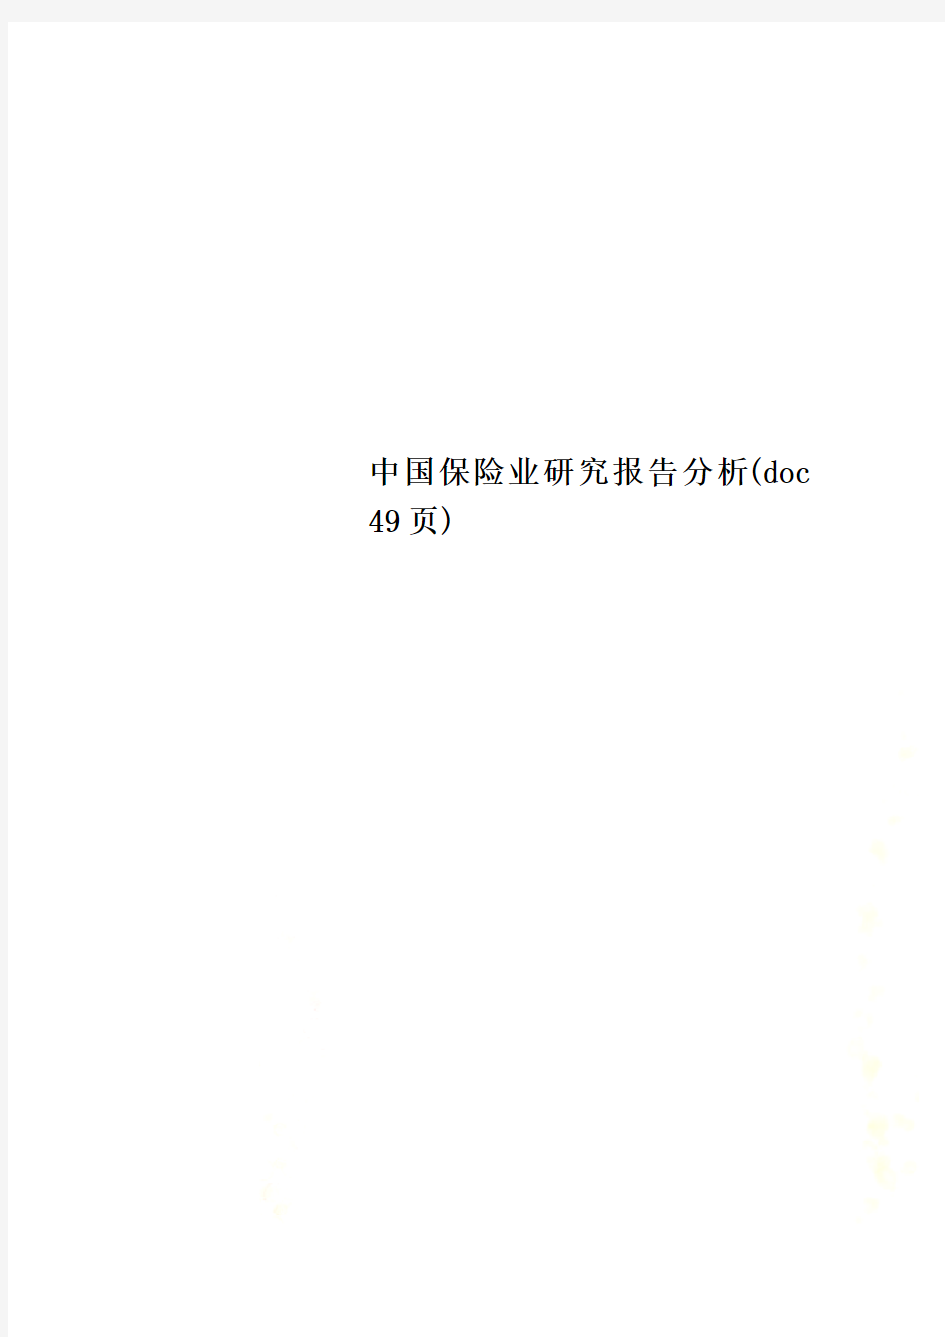 中国保险业研究报告分析(doc 49页)